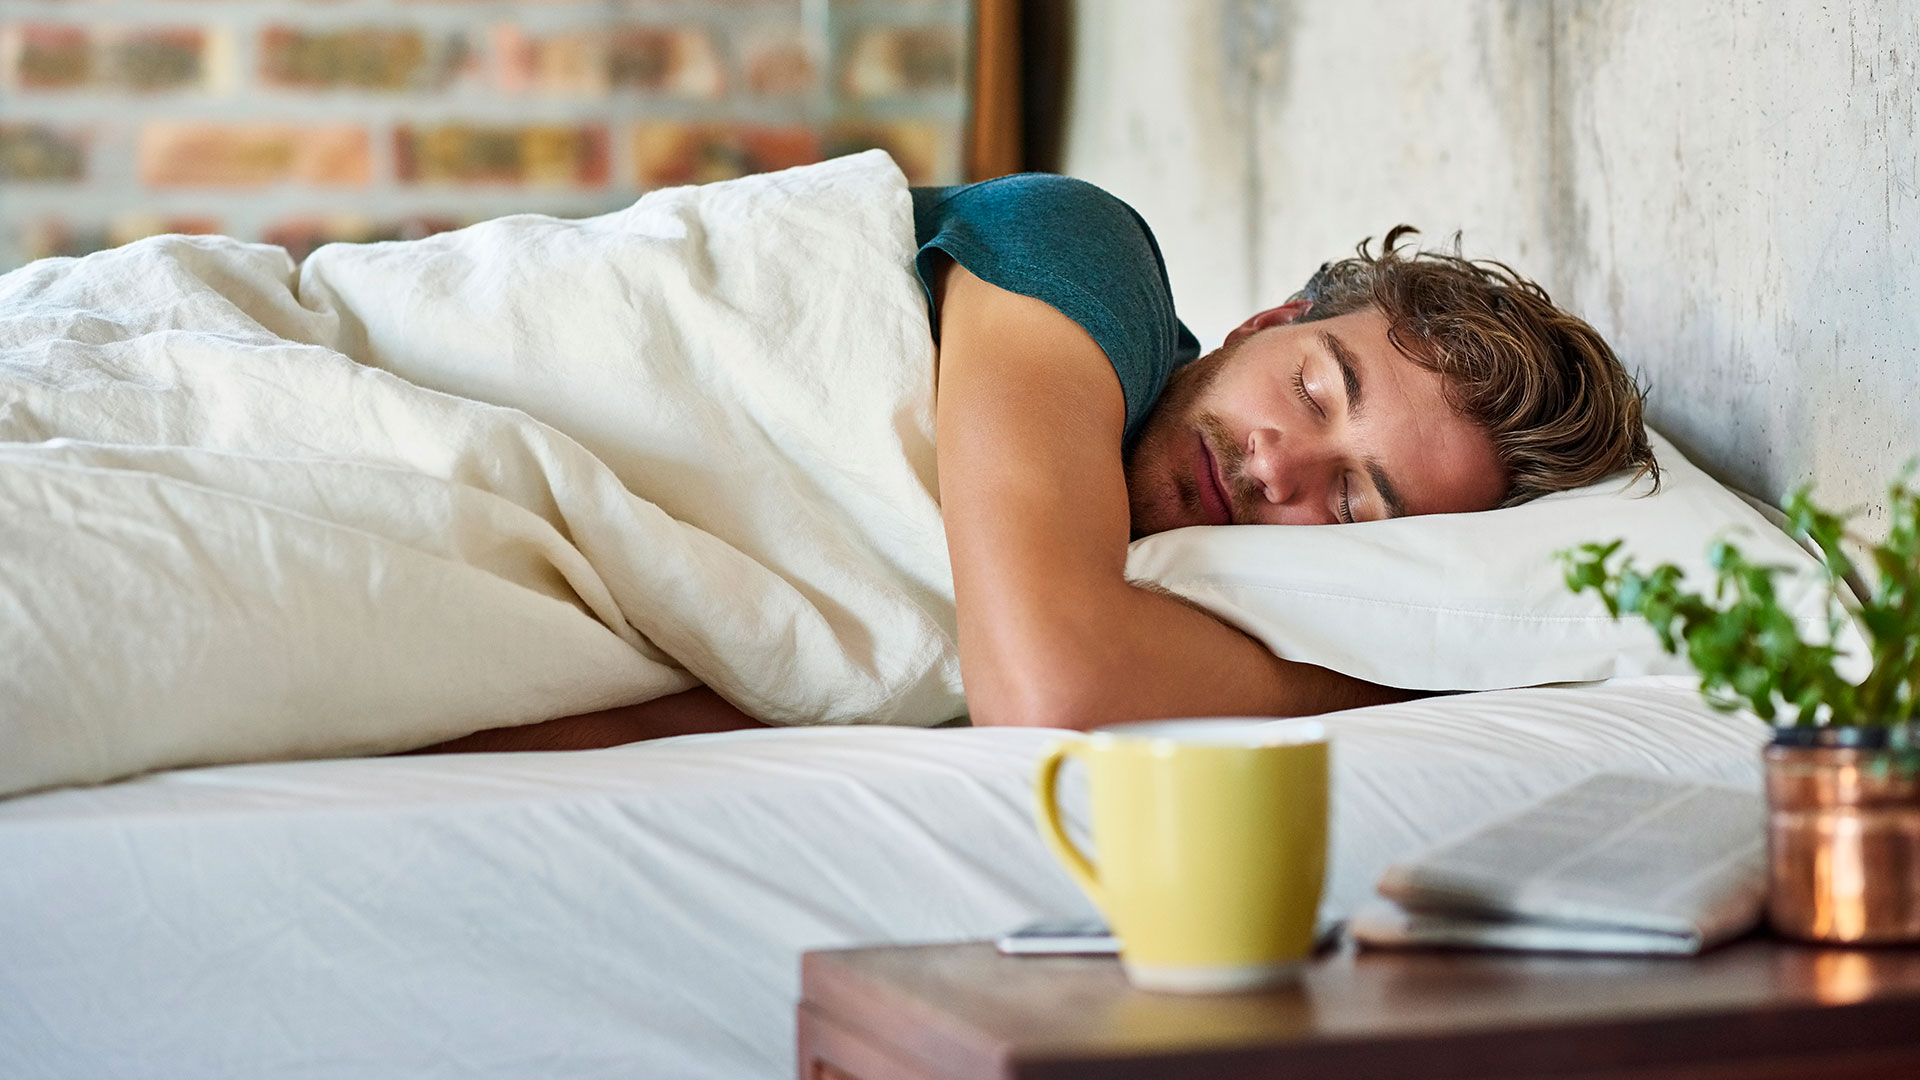 En Estados Unidos, un estudio reveló que el 63 por ciento de los participantes dormía menos de 7 horas por noche